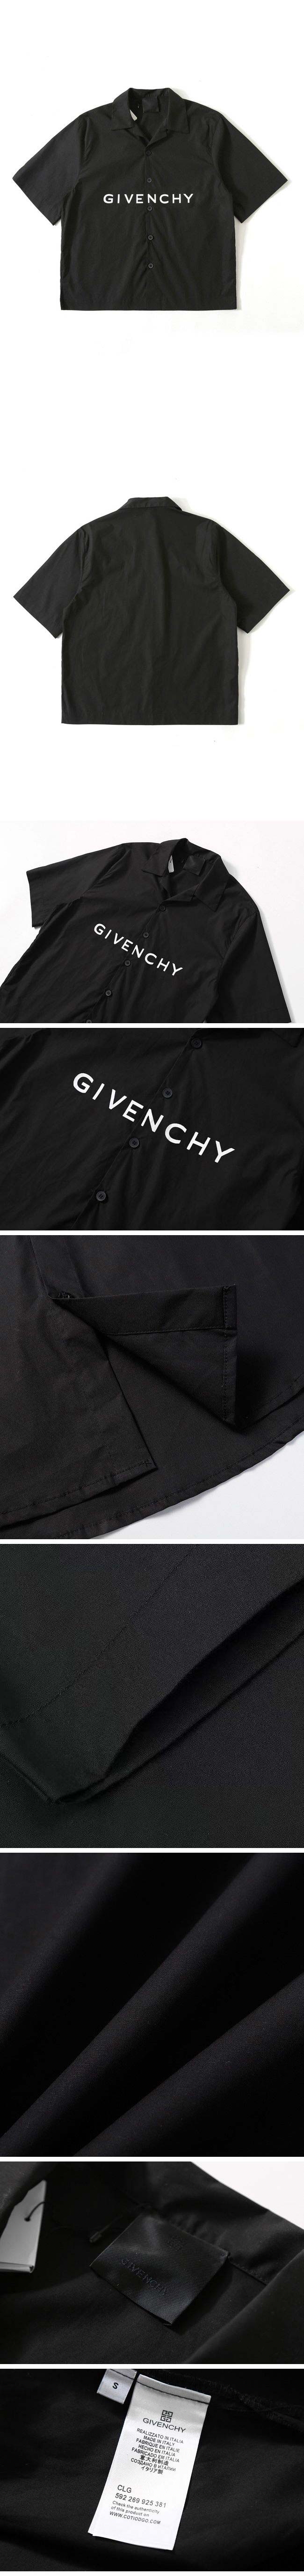 Givenchy Center Print Shirt ジバンシー センター プリント シャツ